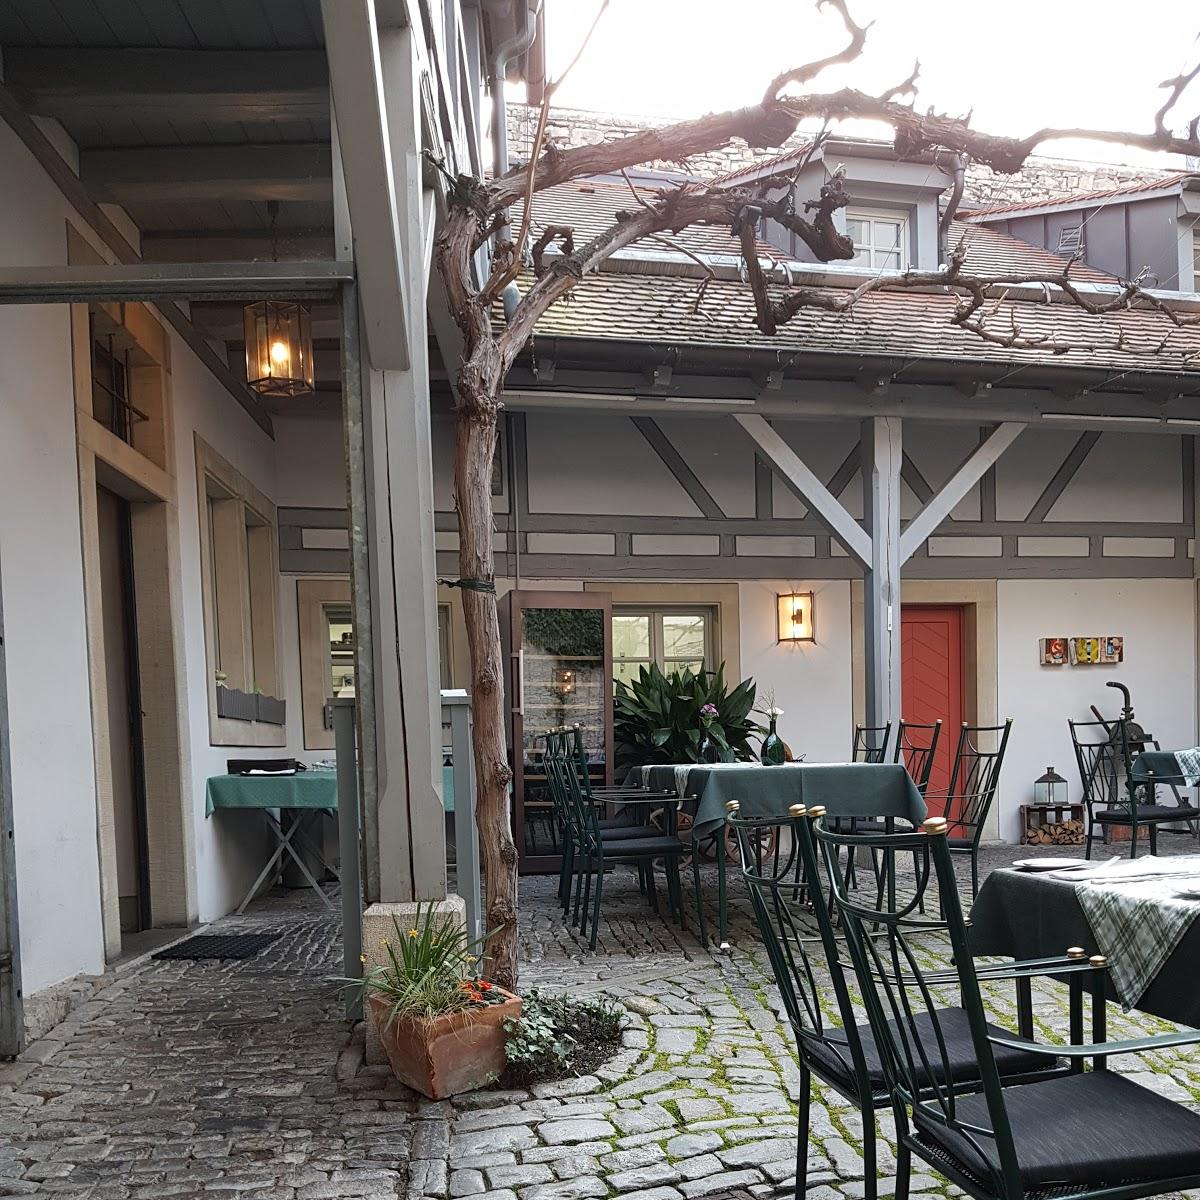 Restaurant "Restaurant Himmelstoss" in  Dettelbach